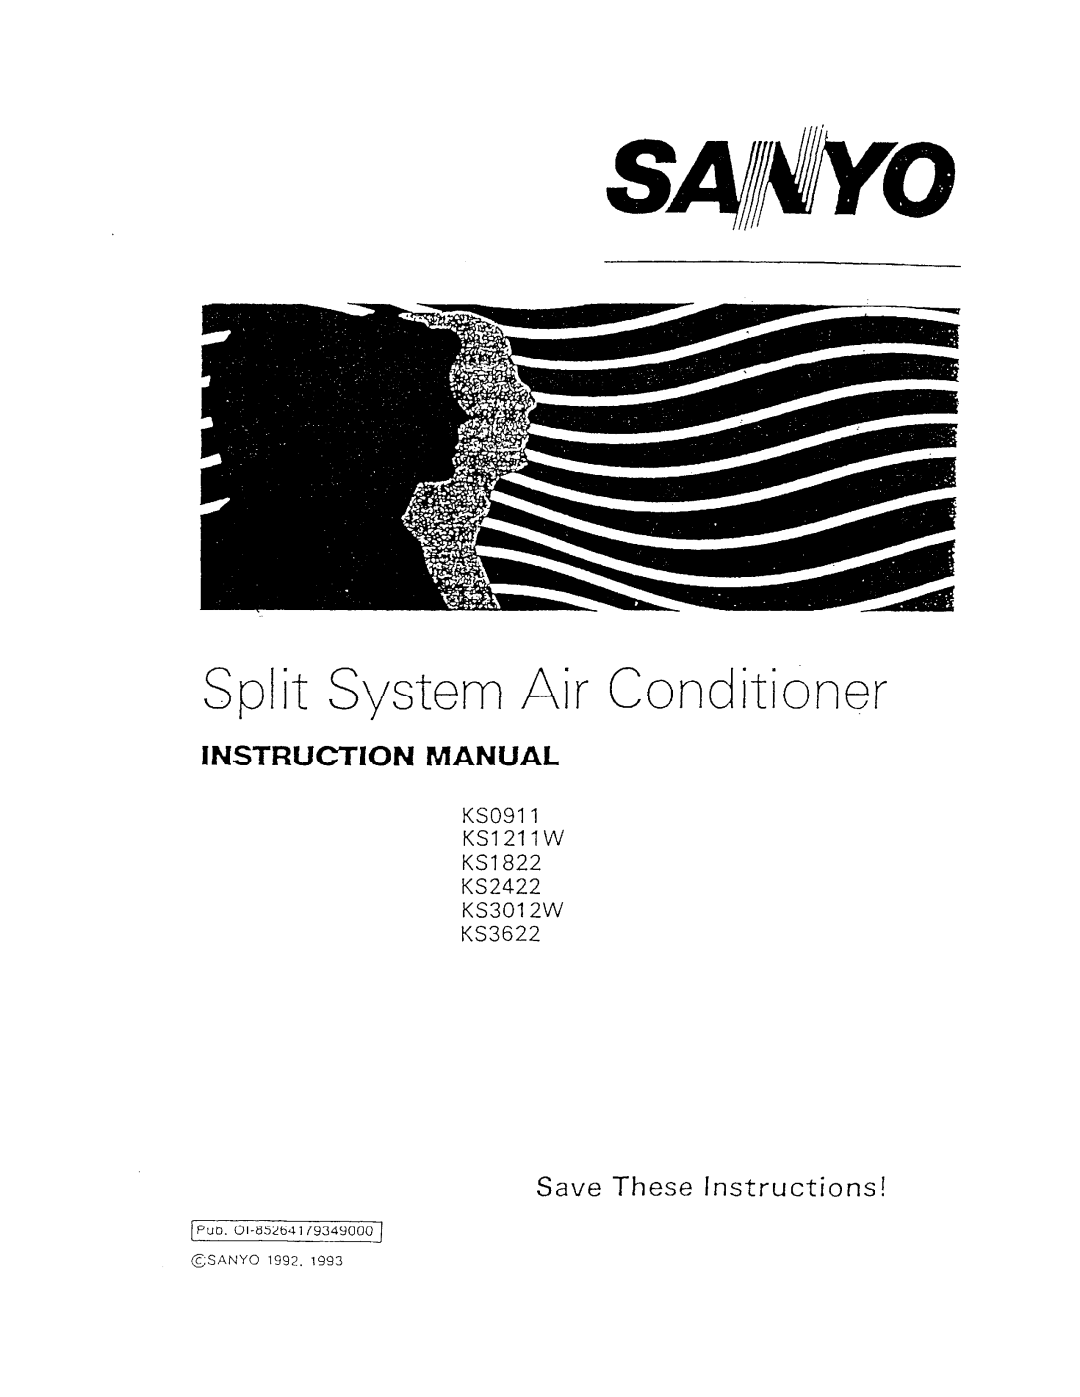 Sanyo KS0911, KS1211W, KS1822, KS3622, KS2422, KS3012W manual 